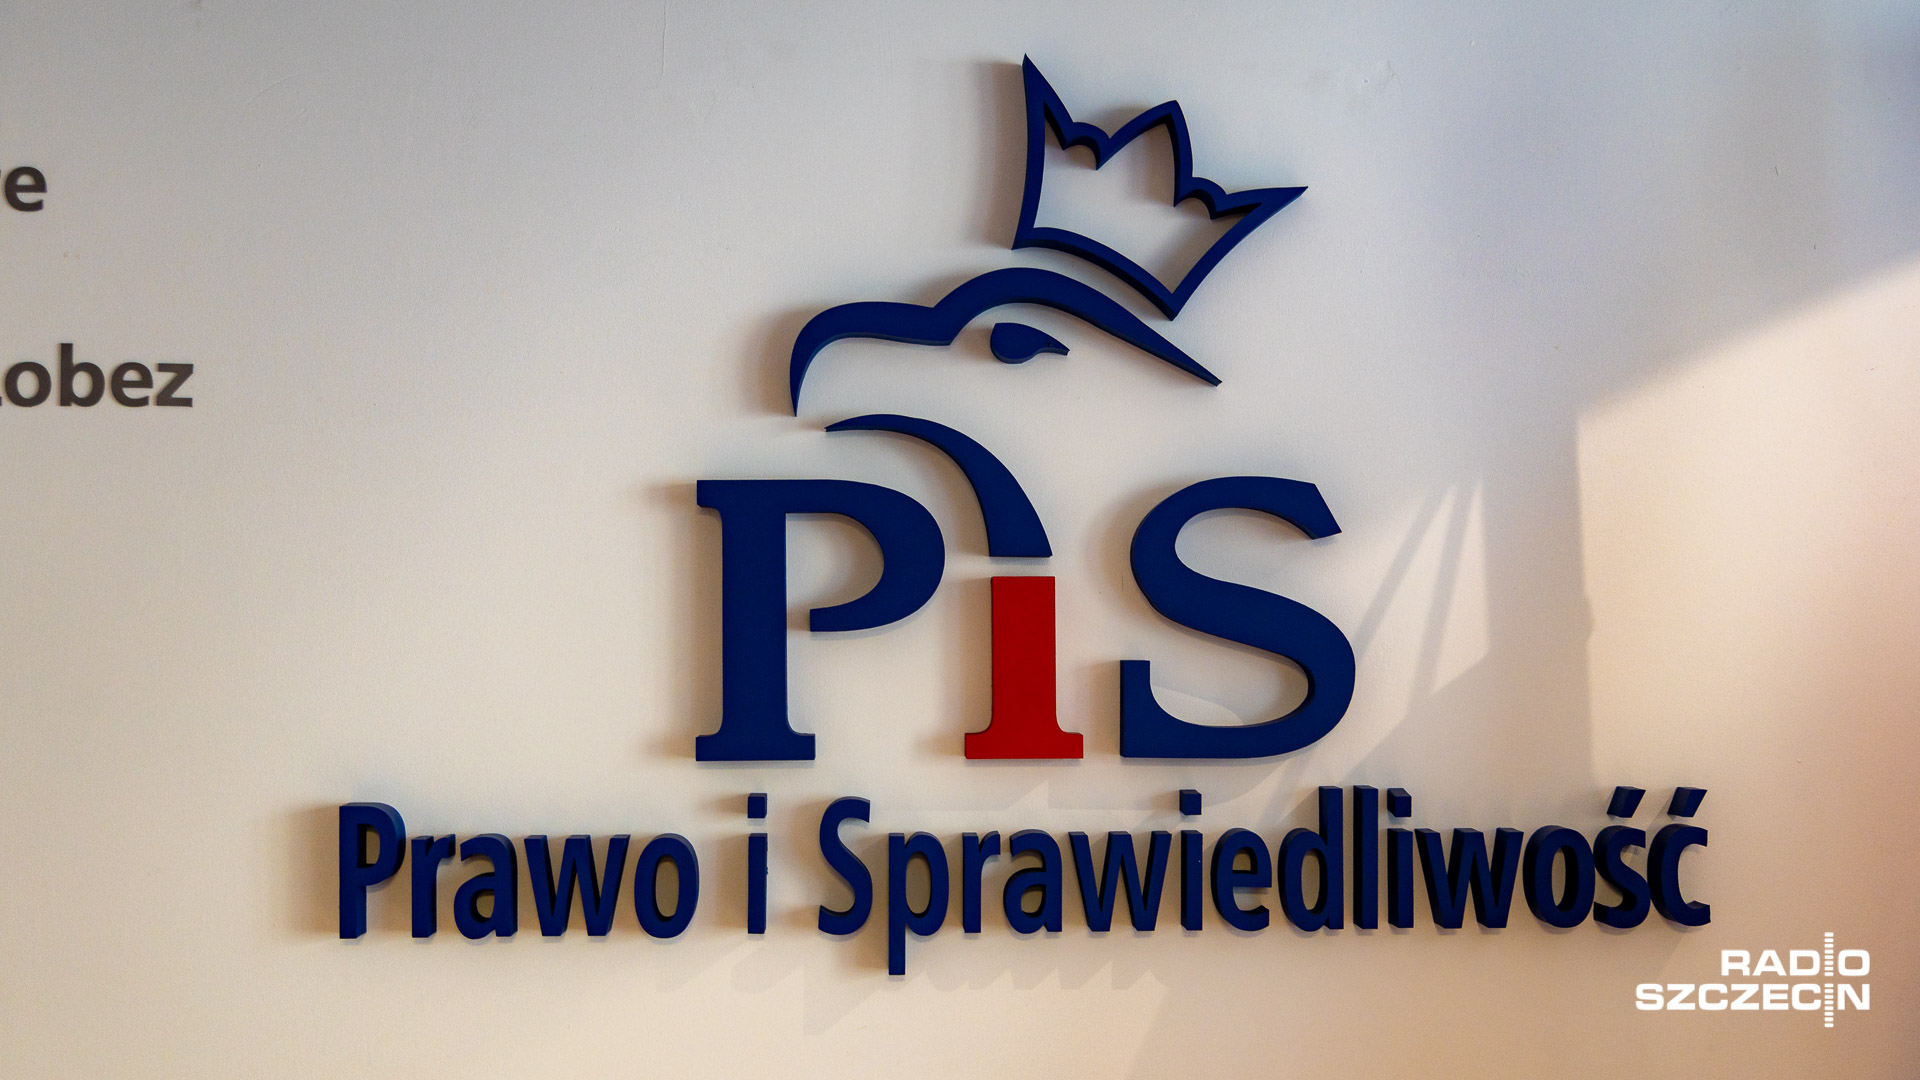 Wiceminister aktywów państwowych Artur Soboń powiedział, że program Prawa i Sprawiedliwości Nowy Polski Ład da impuls do szybkiej odbudowy polskiej gospodarki po kryzysie spowodowanym pandemią koronawirusa.